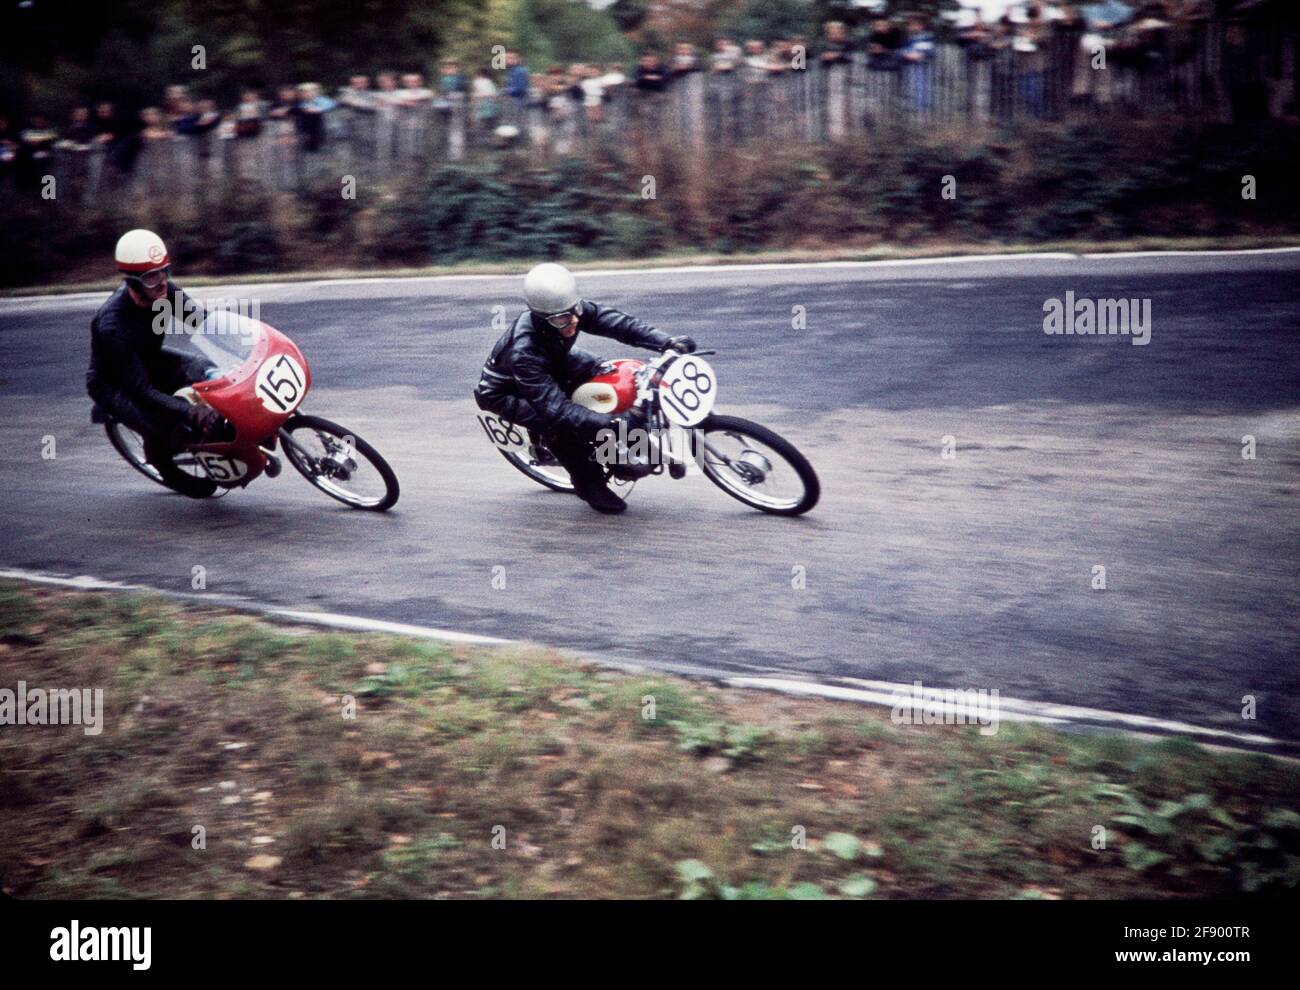 Course de moto et de side-car 1958/59 partie II, Brands Hatch circuit, circuit de course automobile, les marques de paddock Banque D'Images